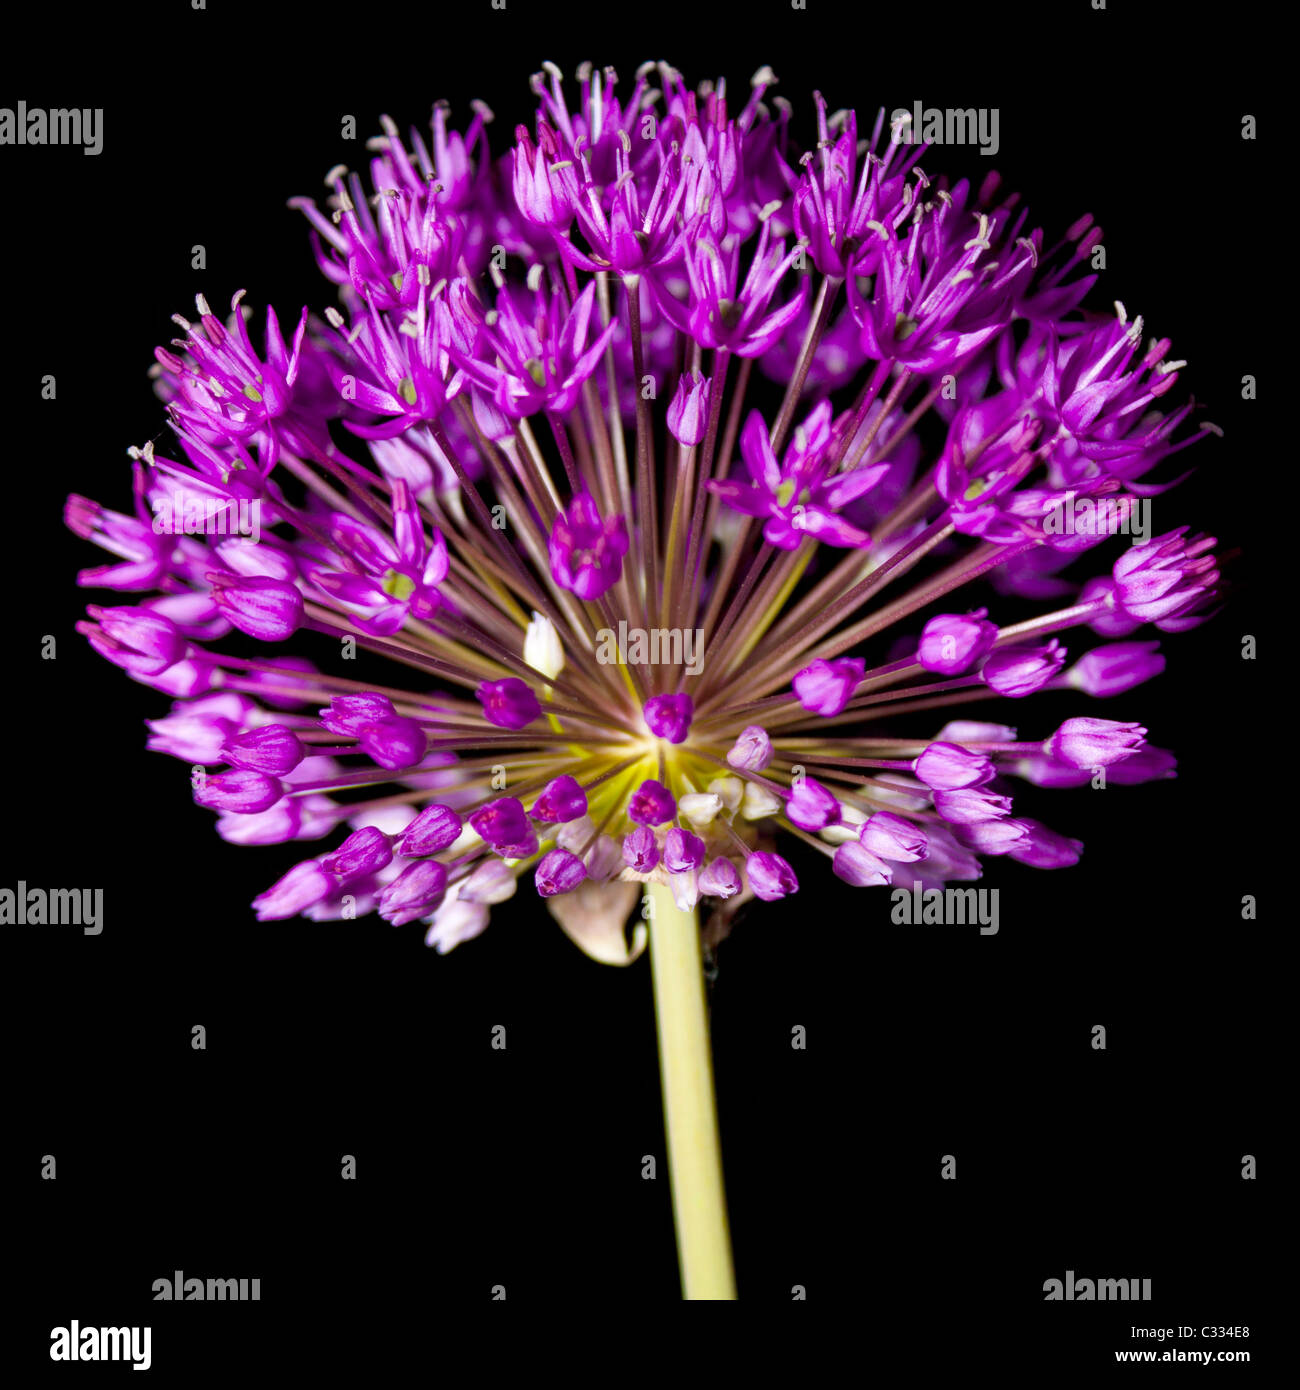 Allium fireworks Stock Photo